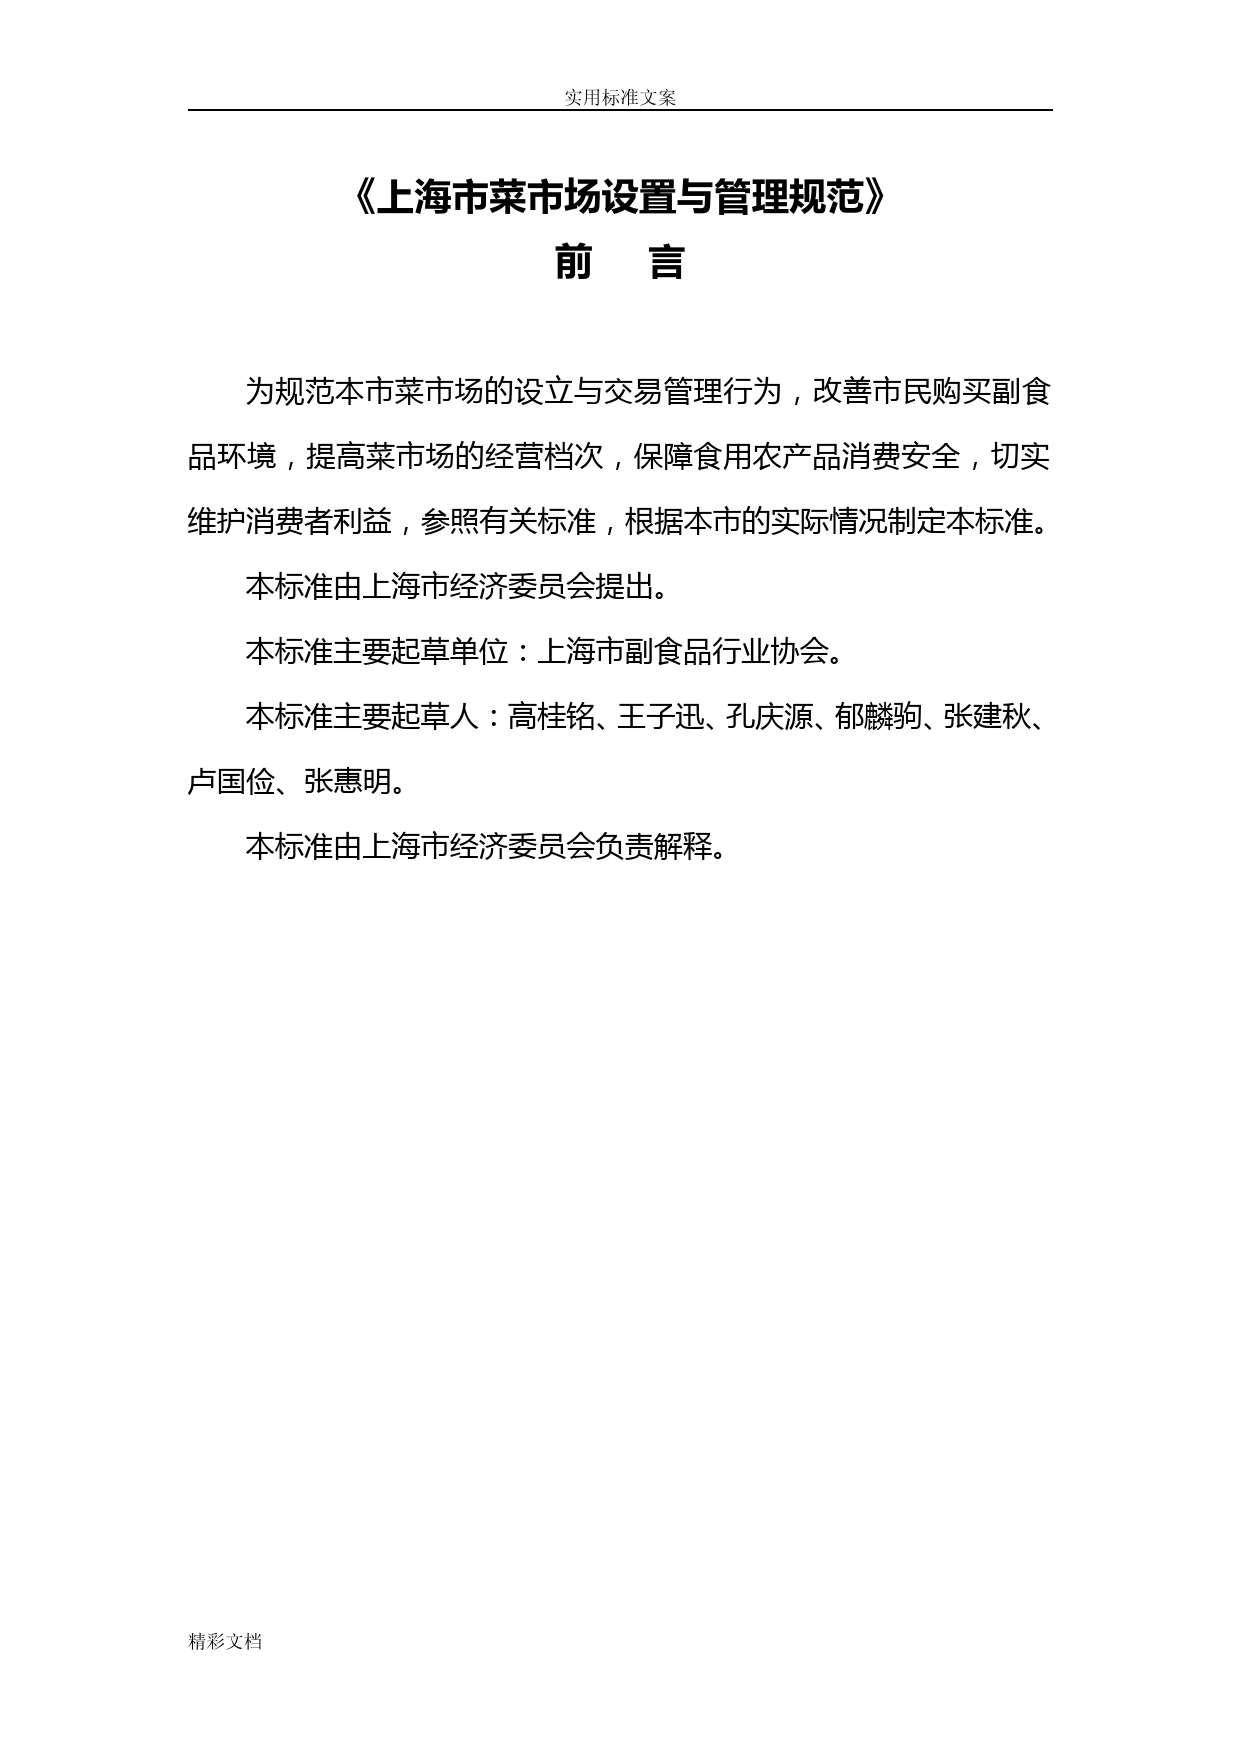 上海菜场设置要求规范